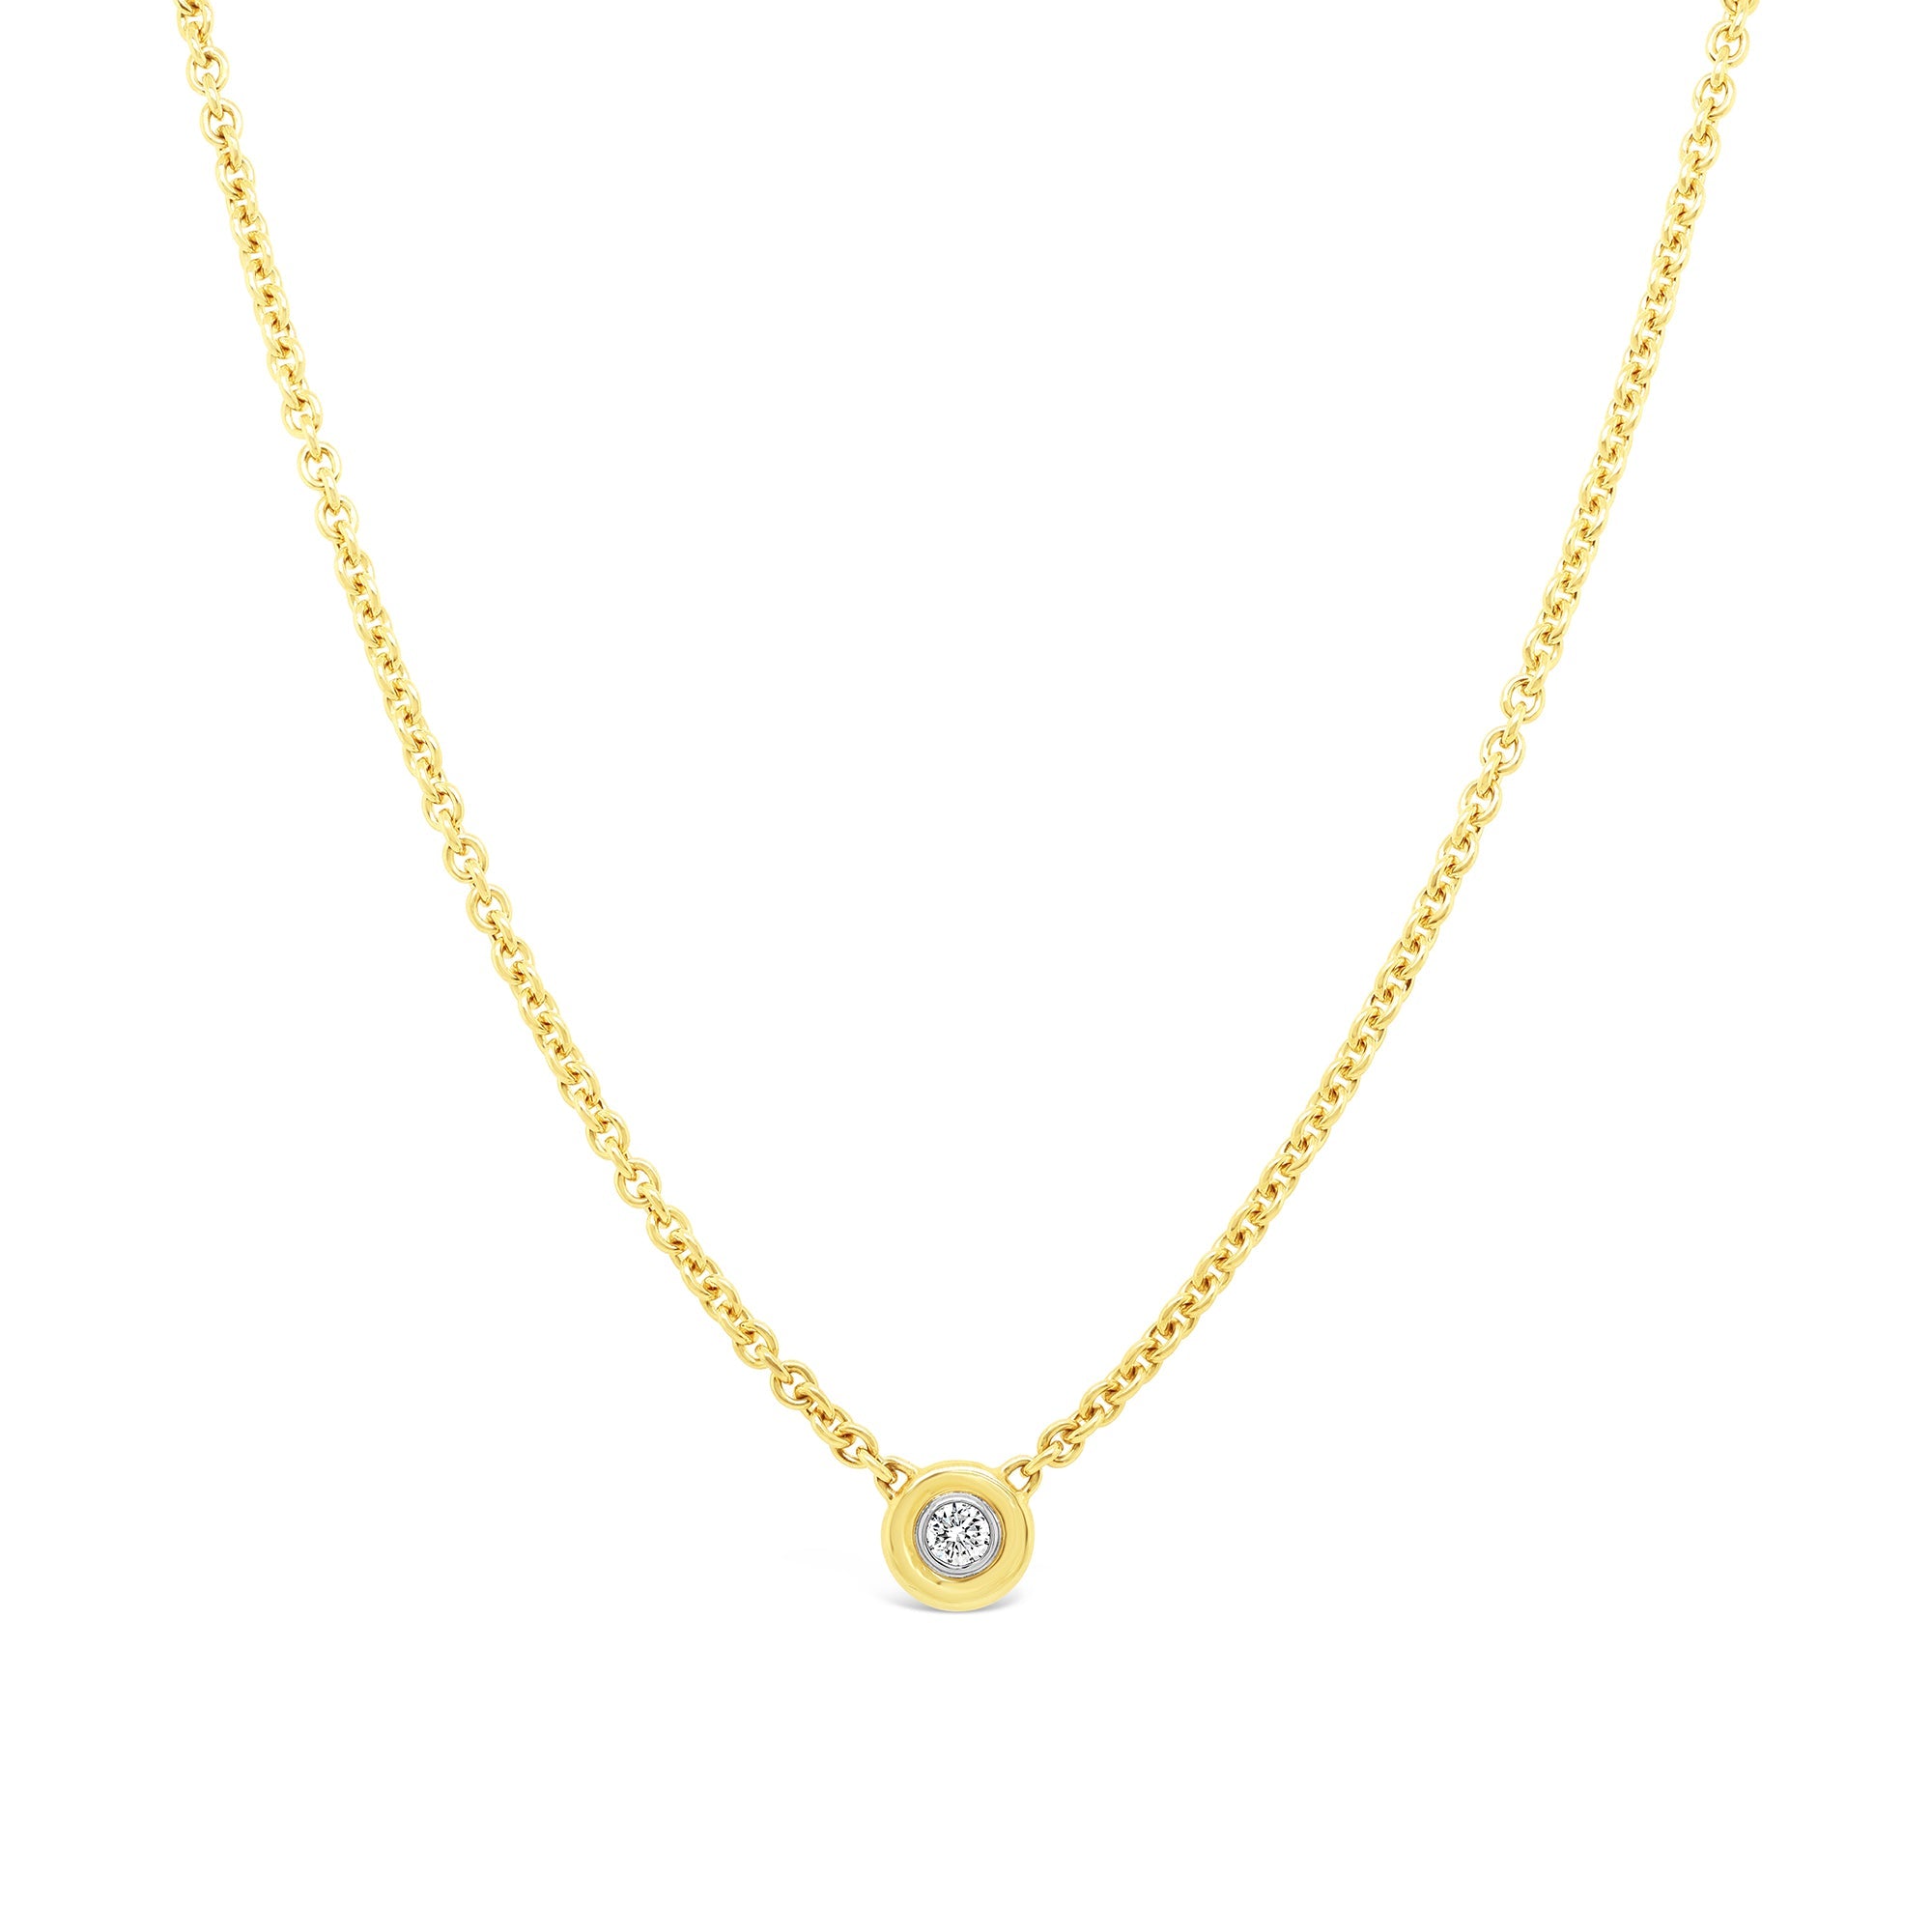 18ct yellow gold diamond set choker necklace